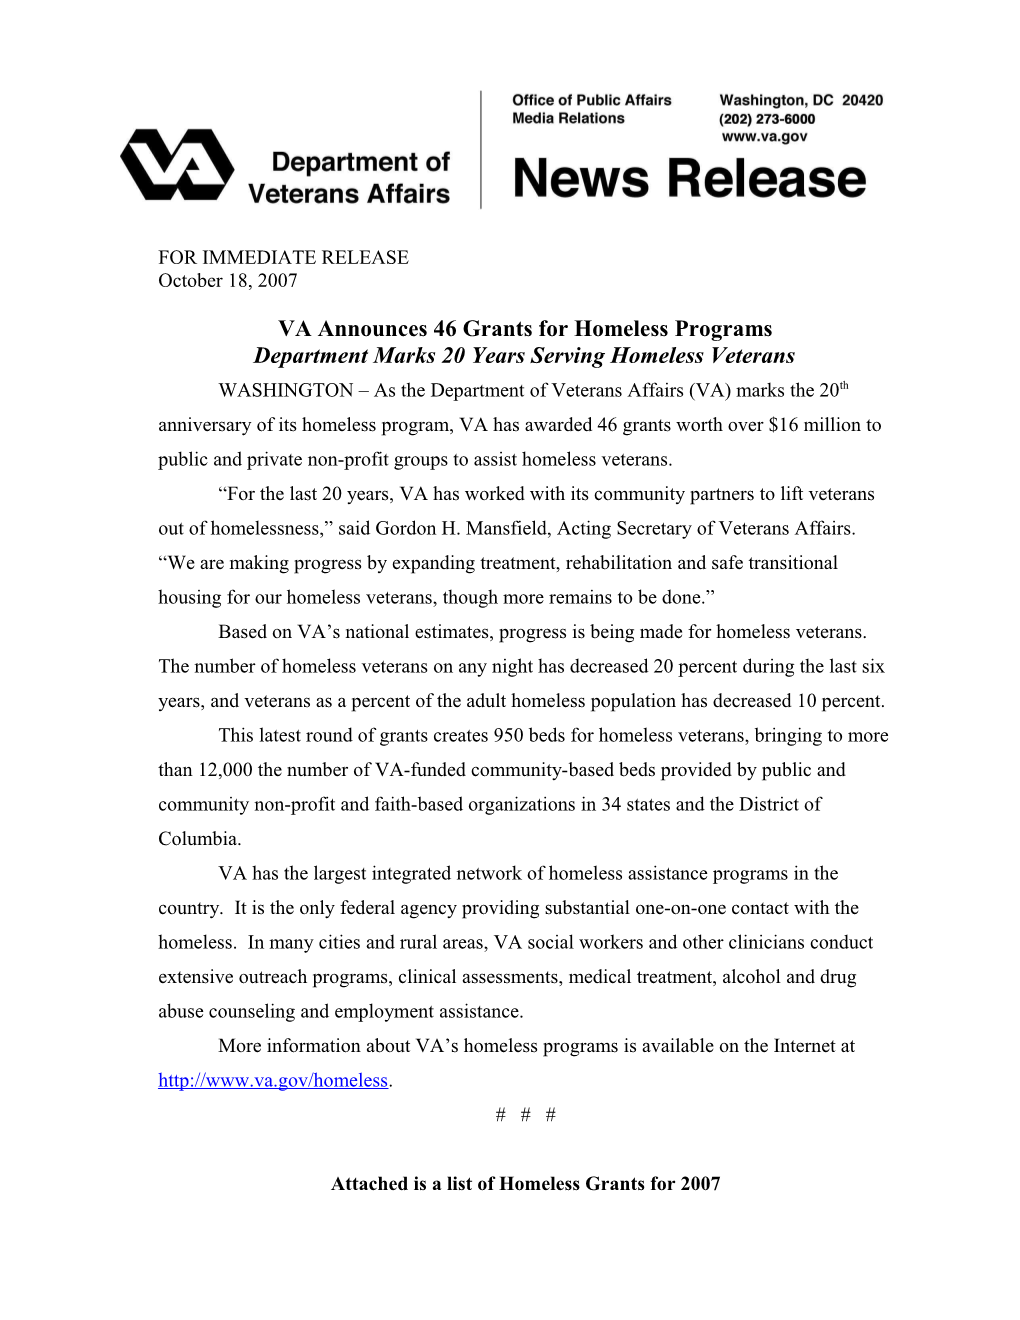 VA Announces46 Grants for Homeless Programs